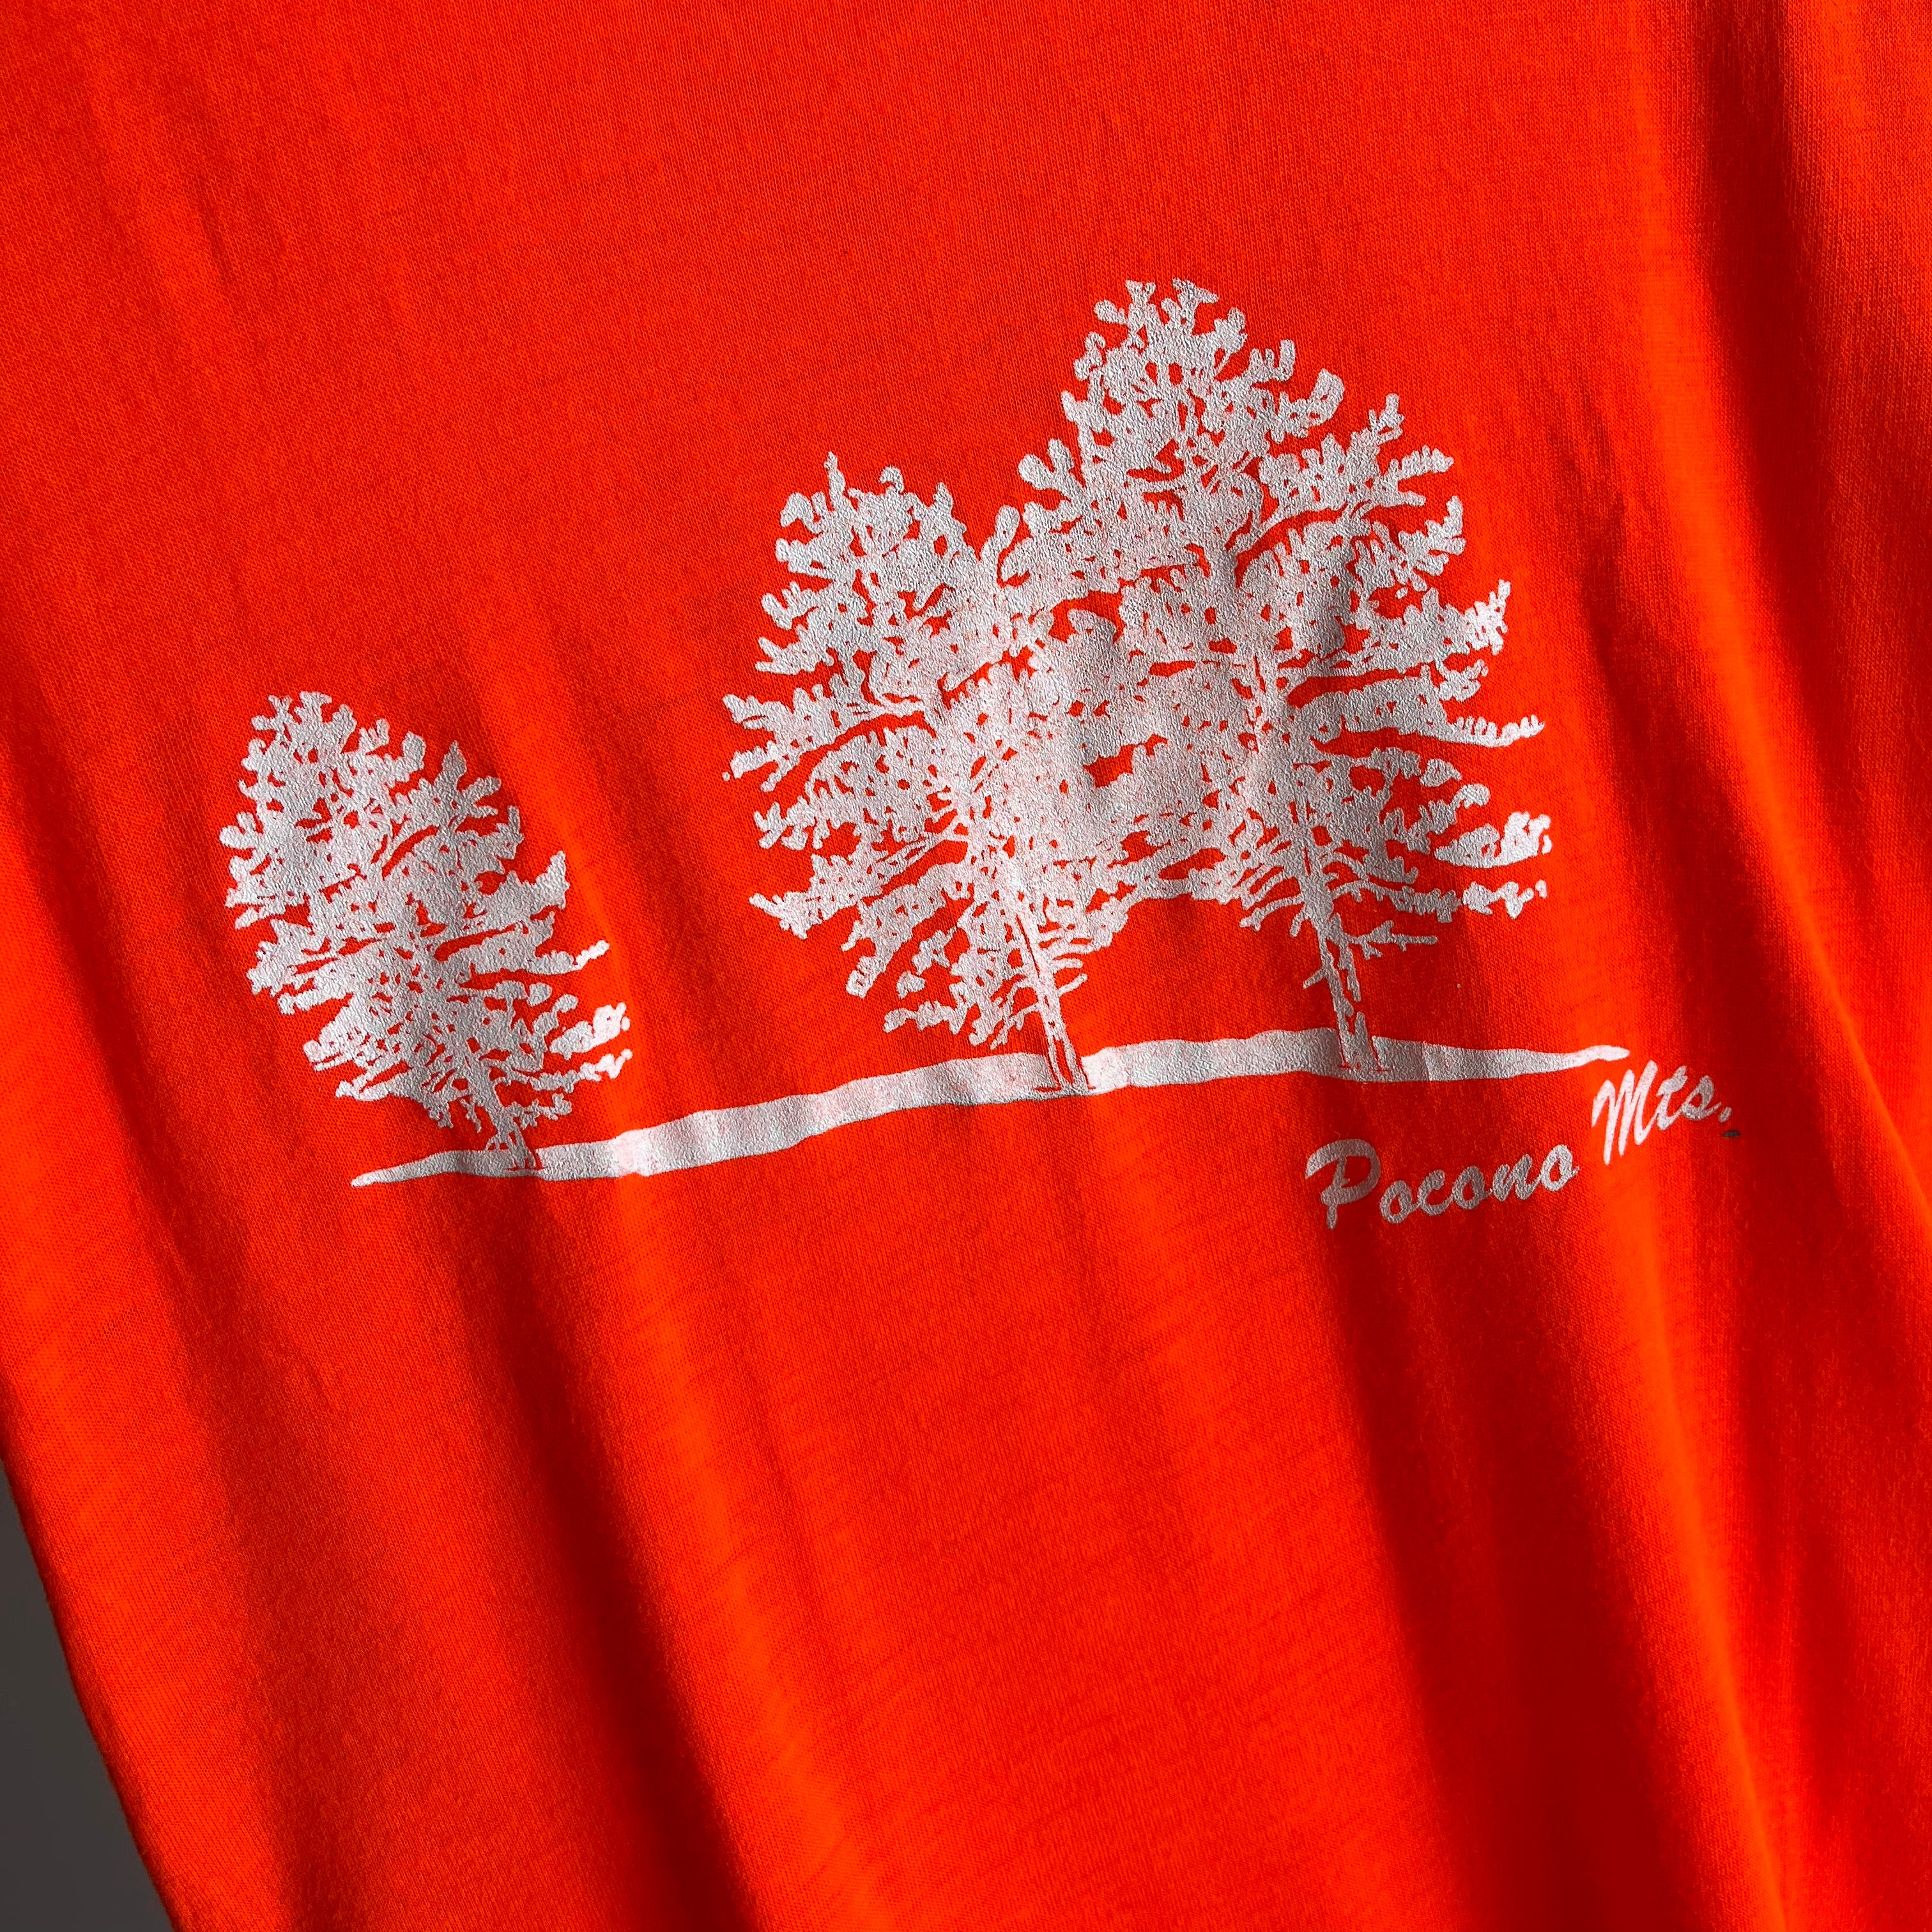 1970/80s Pocono Mountains Neon Orange T-Shirt